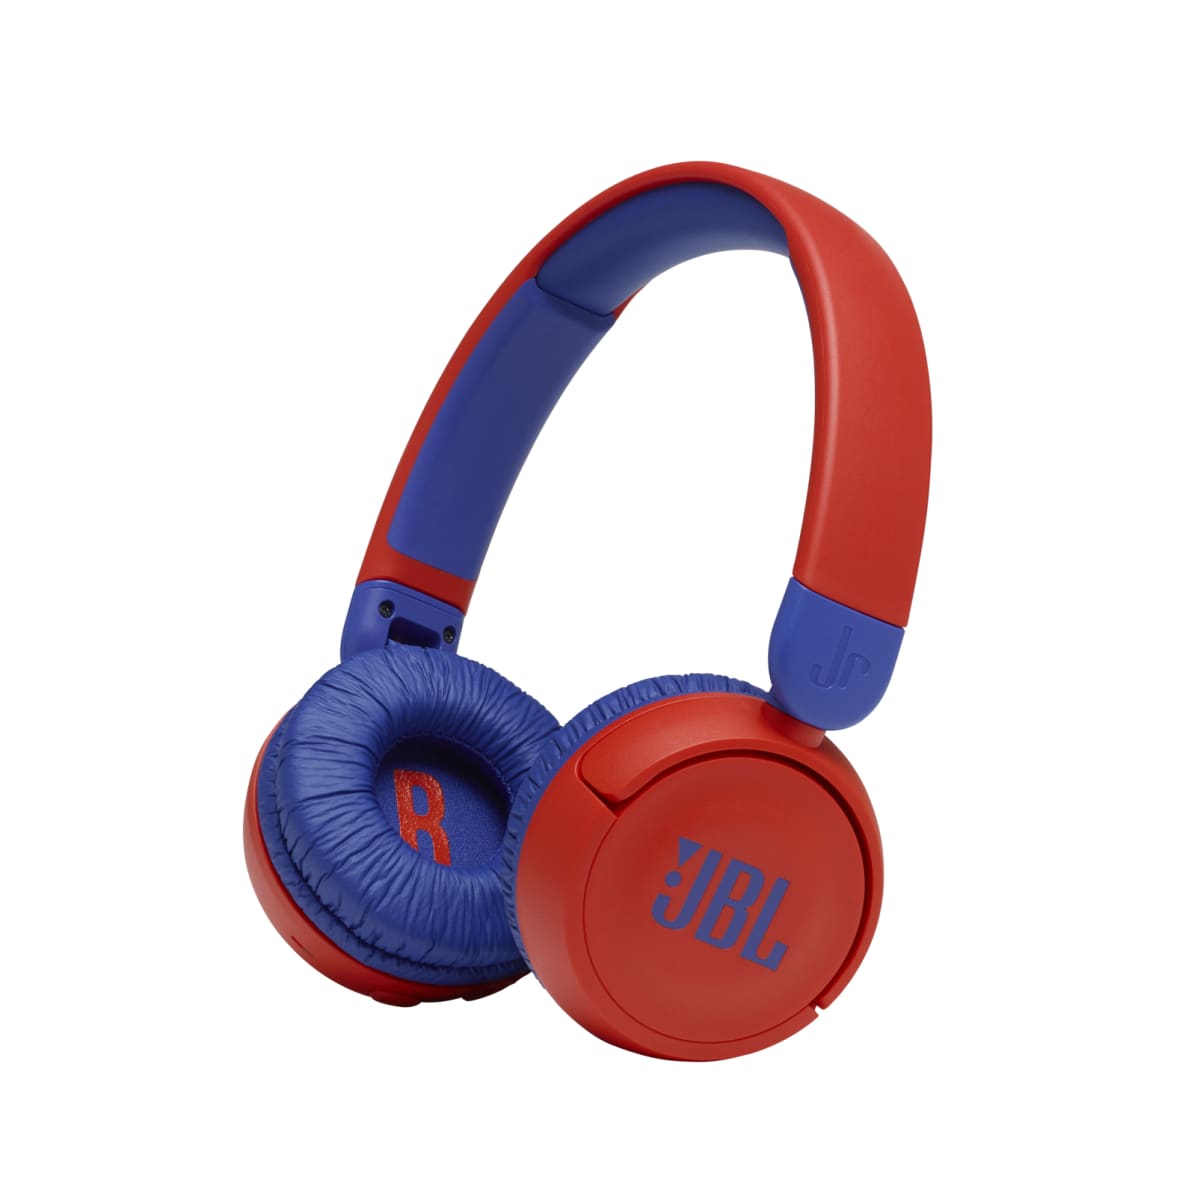 JBL JR310 BT Kids Wireless On-Ear Headphones - Red - 